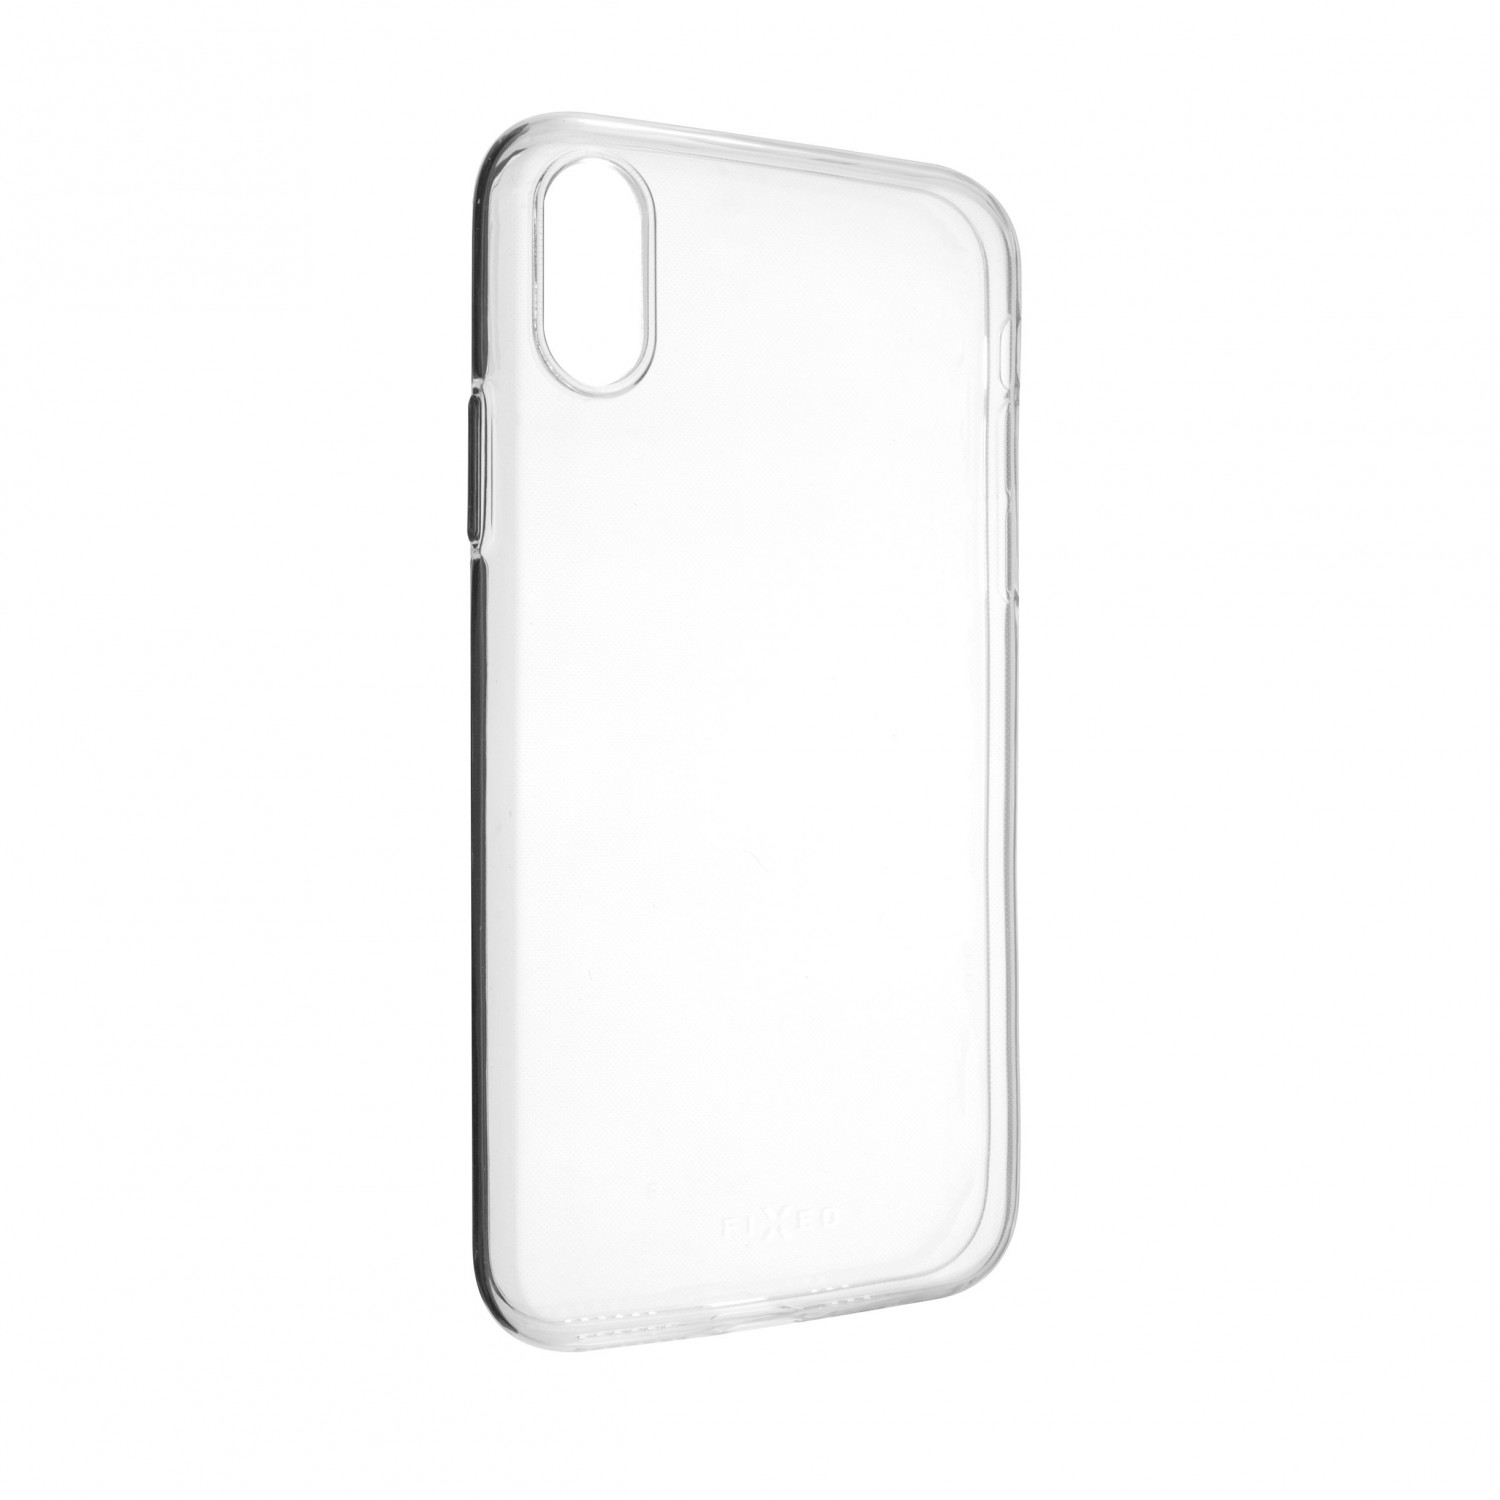 Ultratenké silikonové pouzdro FIXED Skin pro Apple iPhone XS, transparentní